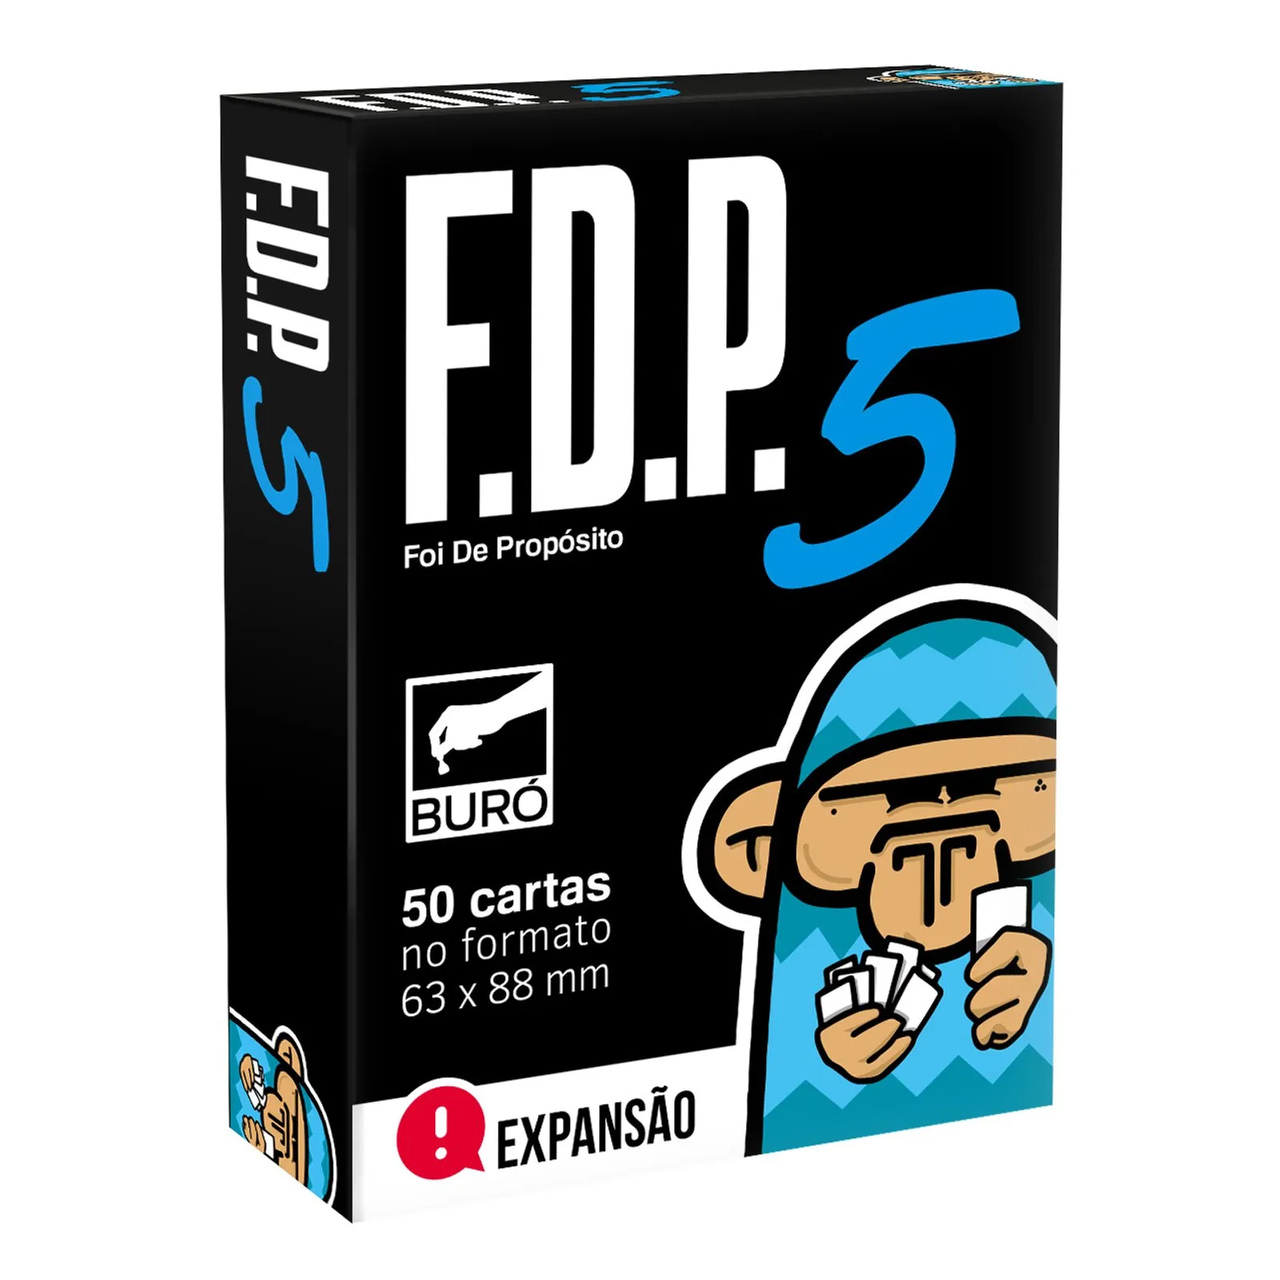 FDP - Foi de Propósito 5 (Expansão)